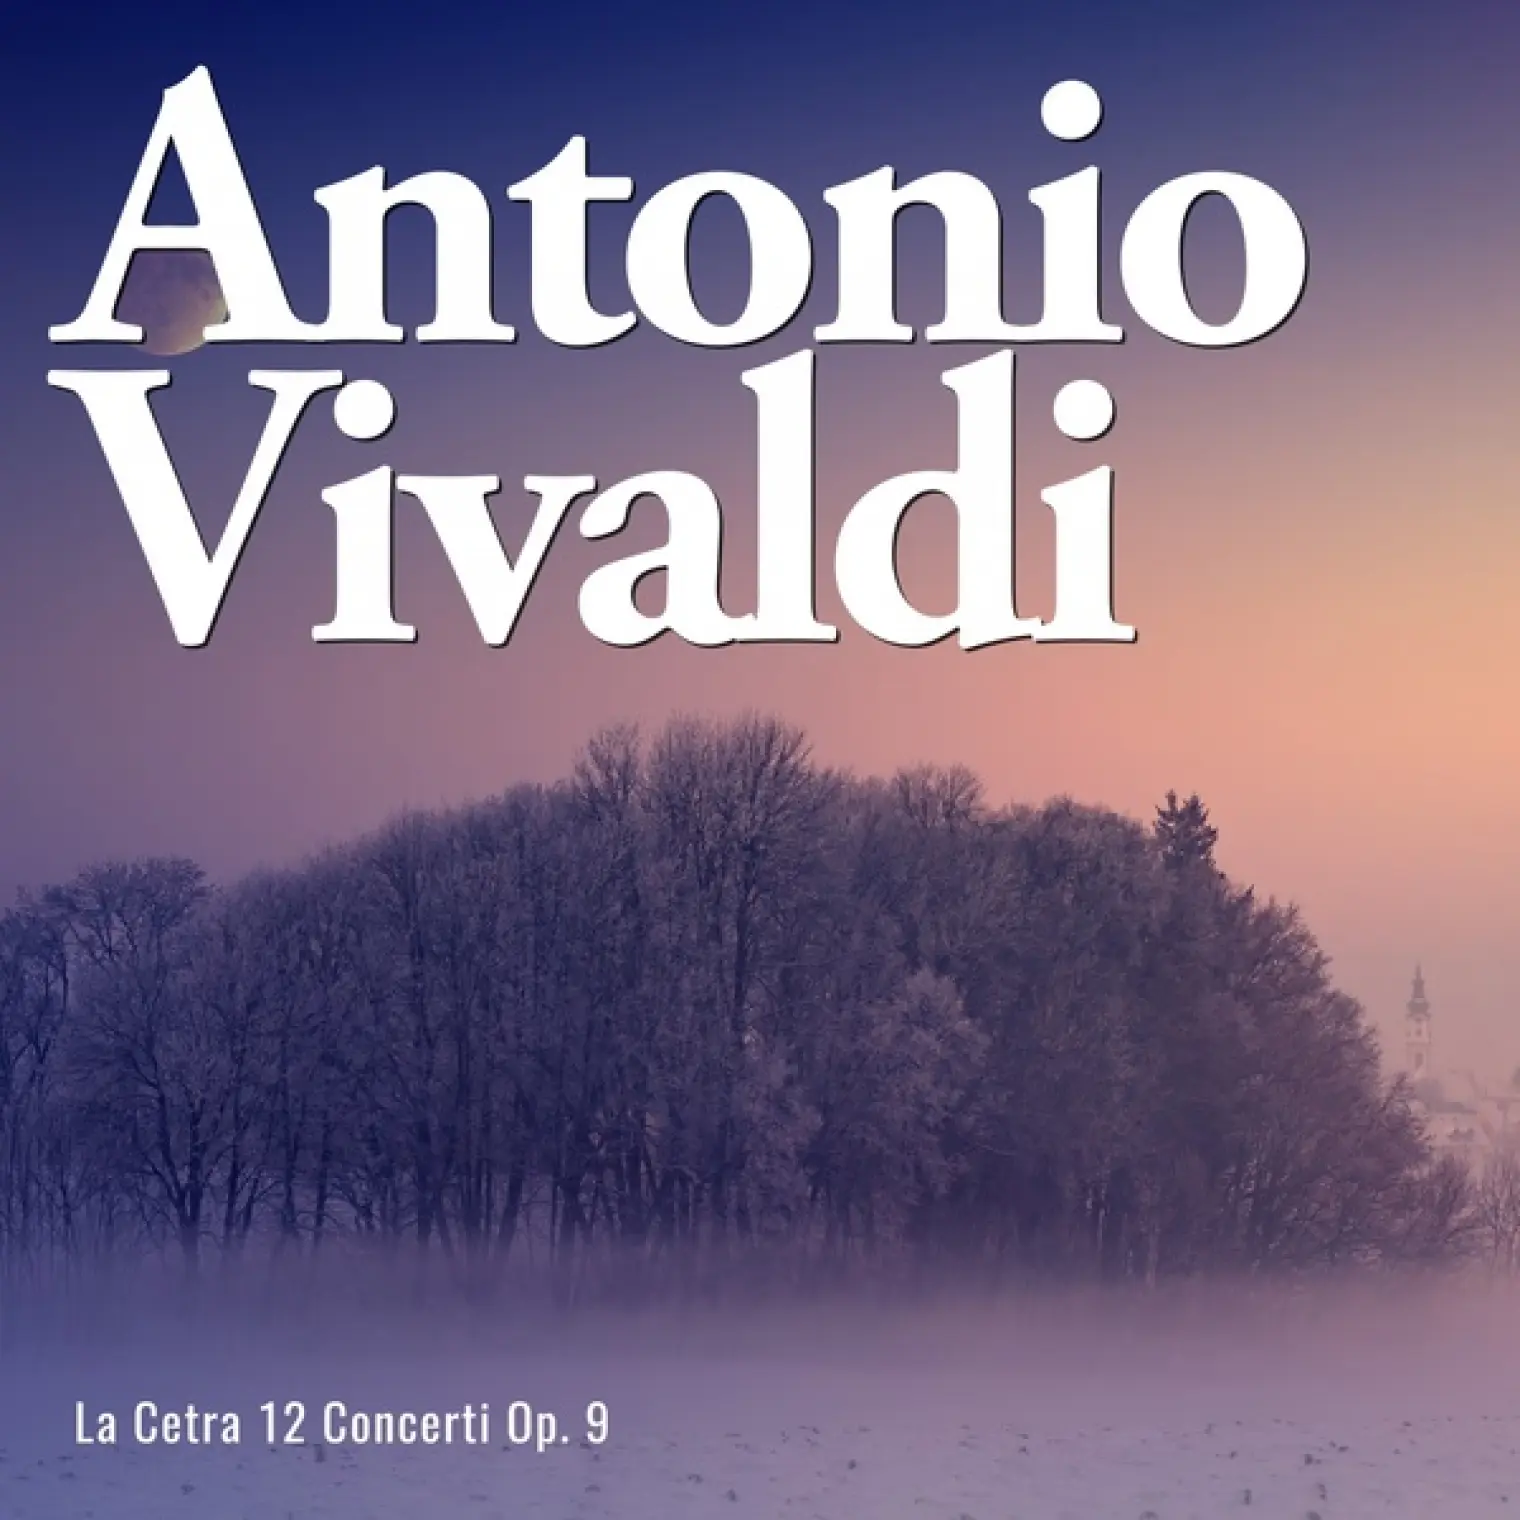 La Cetra 12 Concerti Op. 9 -  Antonio Vivaldi 